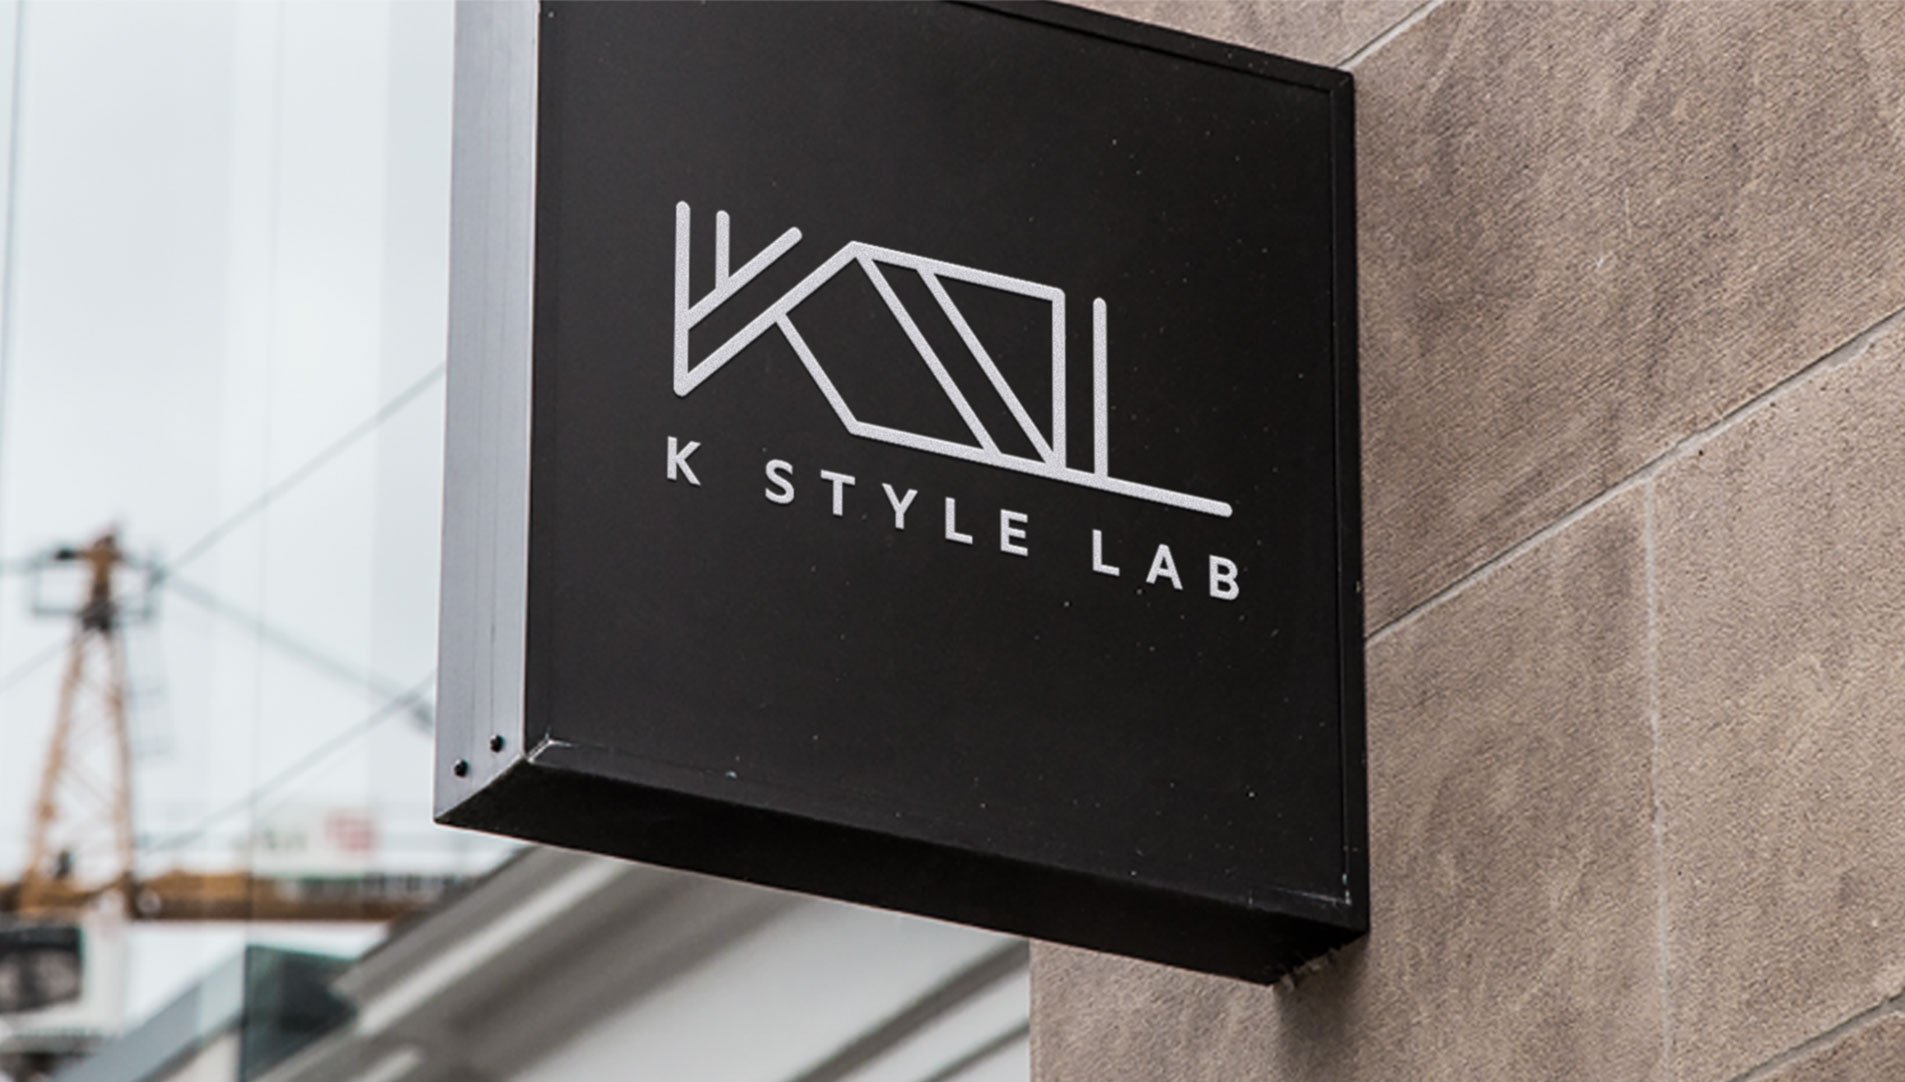 e commerce singapore k style lab slideshow 03 - K-Style Lab